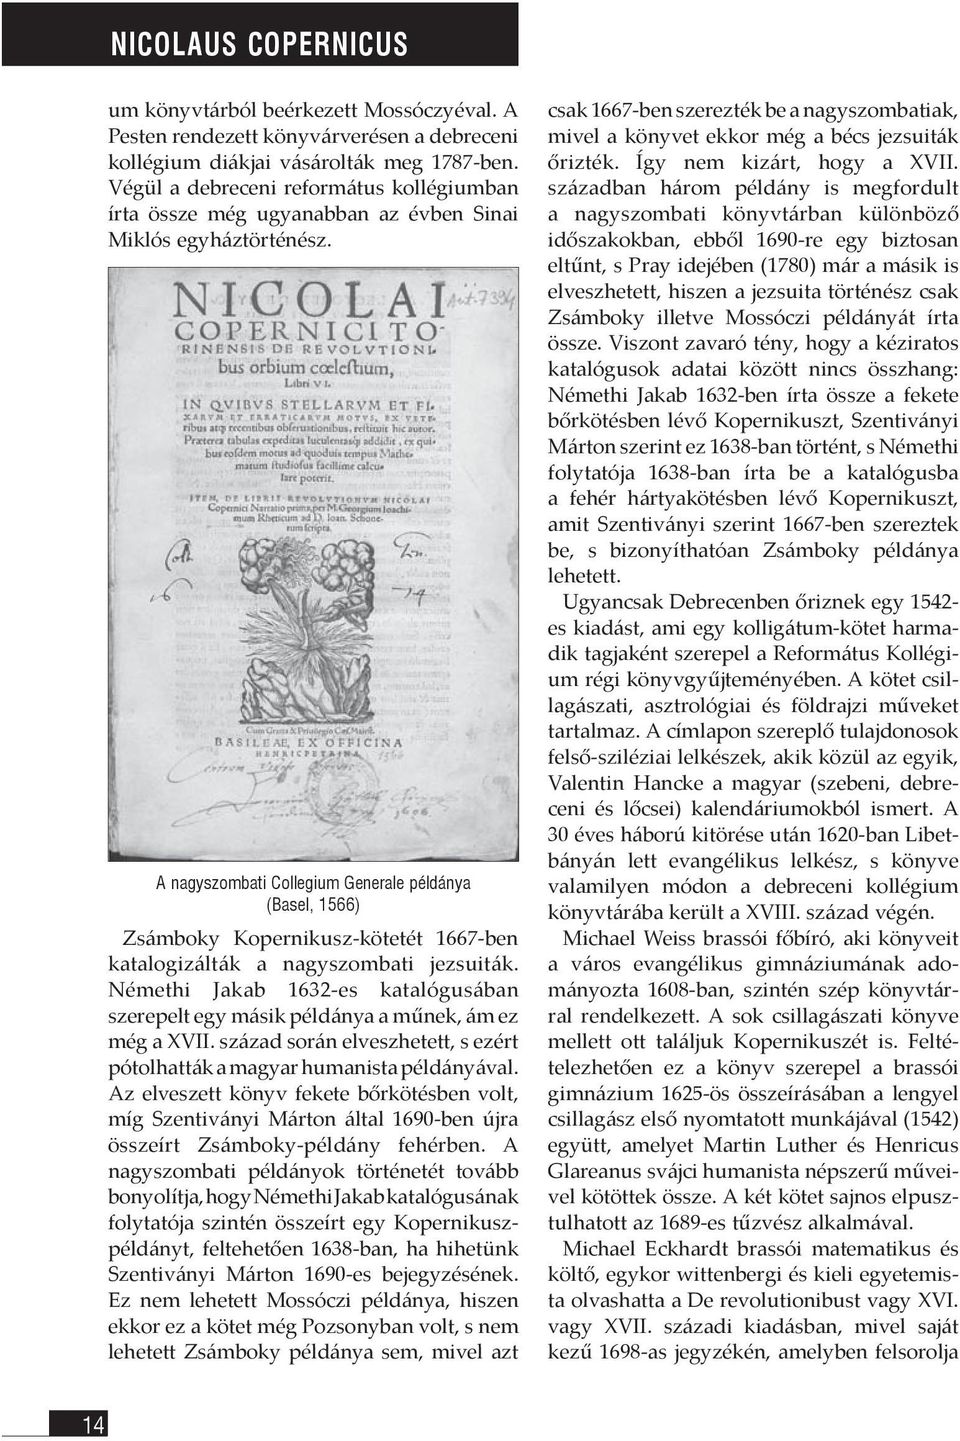 A nagyszombati Collegium Generale példánya (Basel, 1566) Zsámboky Kopernikusz-kötetét 1667-ben katalogizálták a nagyszombati jezsuiták.